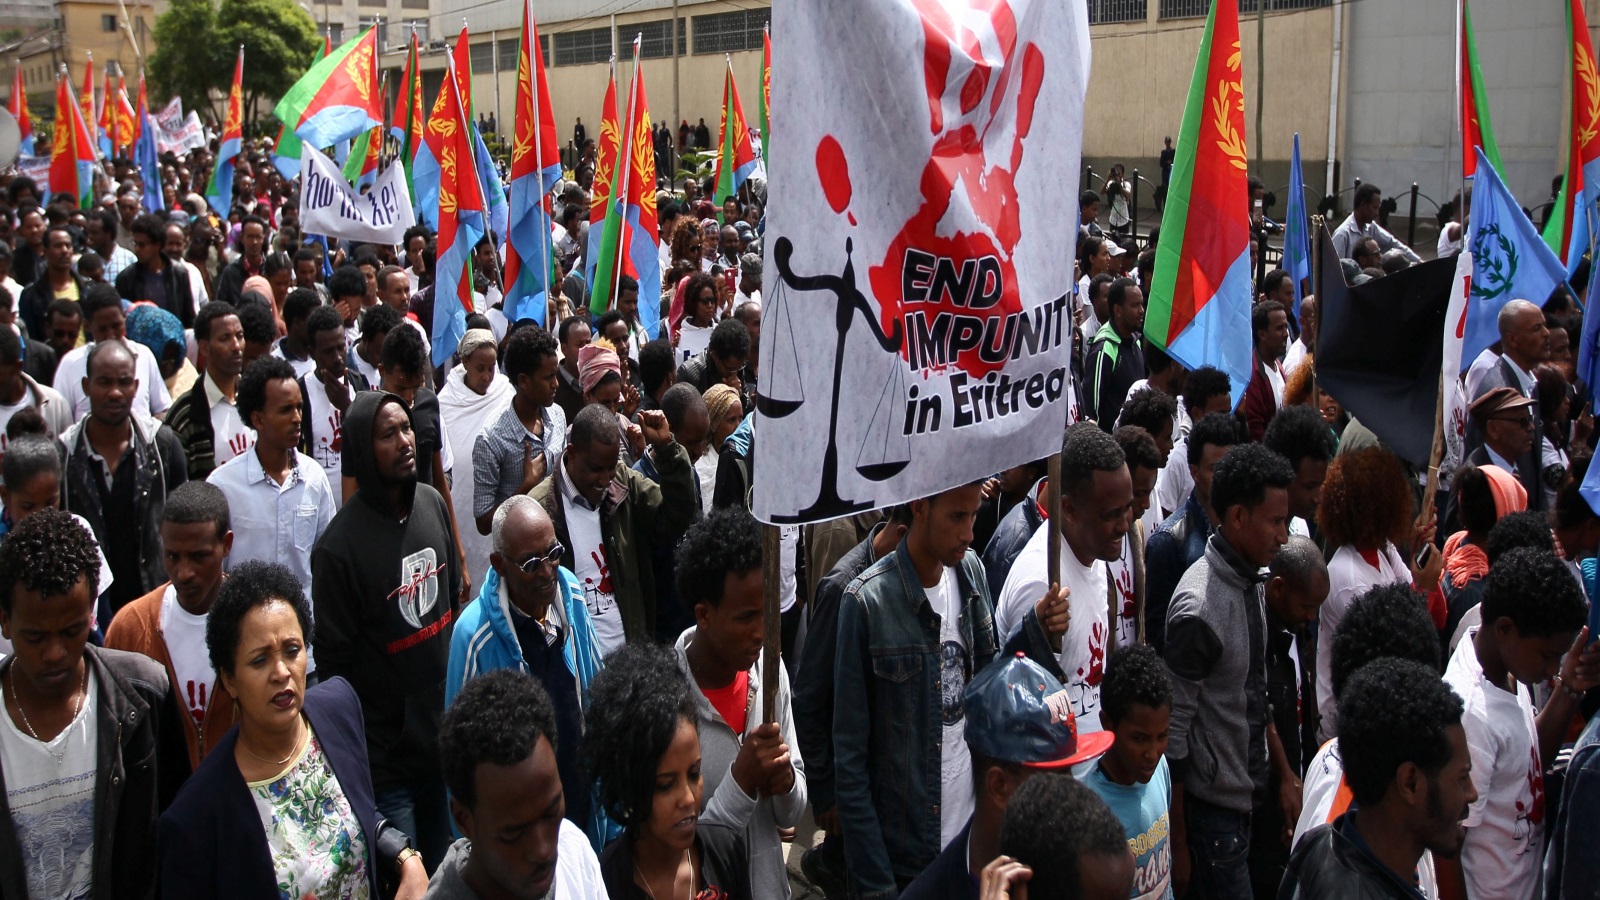 لمّا أدرك الإريتريون أنه لا حائل بينهم وبين حريتهم إلا خوفهم الذي يترعرع عليه الطغيان، خرجوا إلى شوارع أسمرا غصاباً